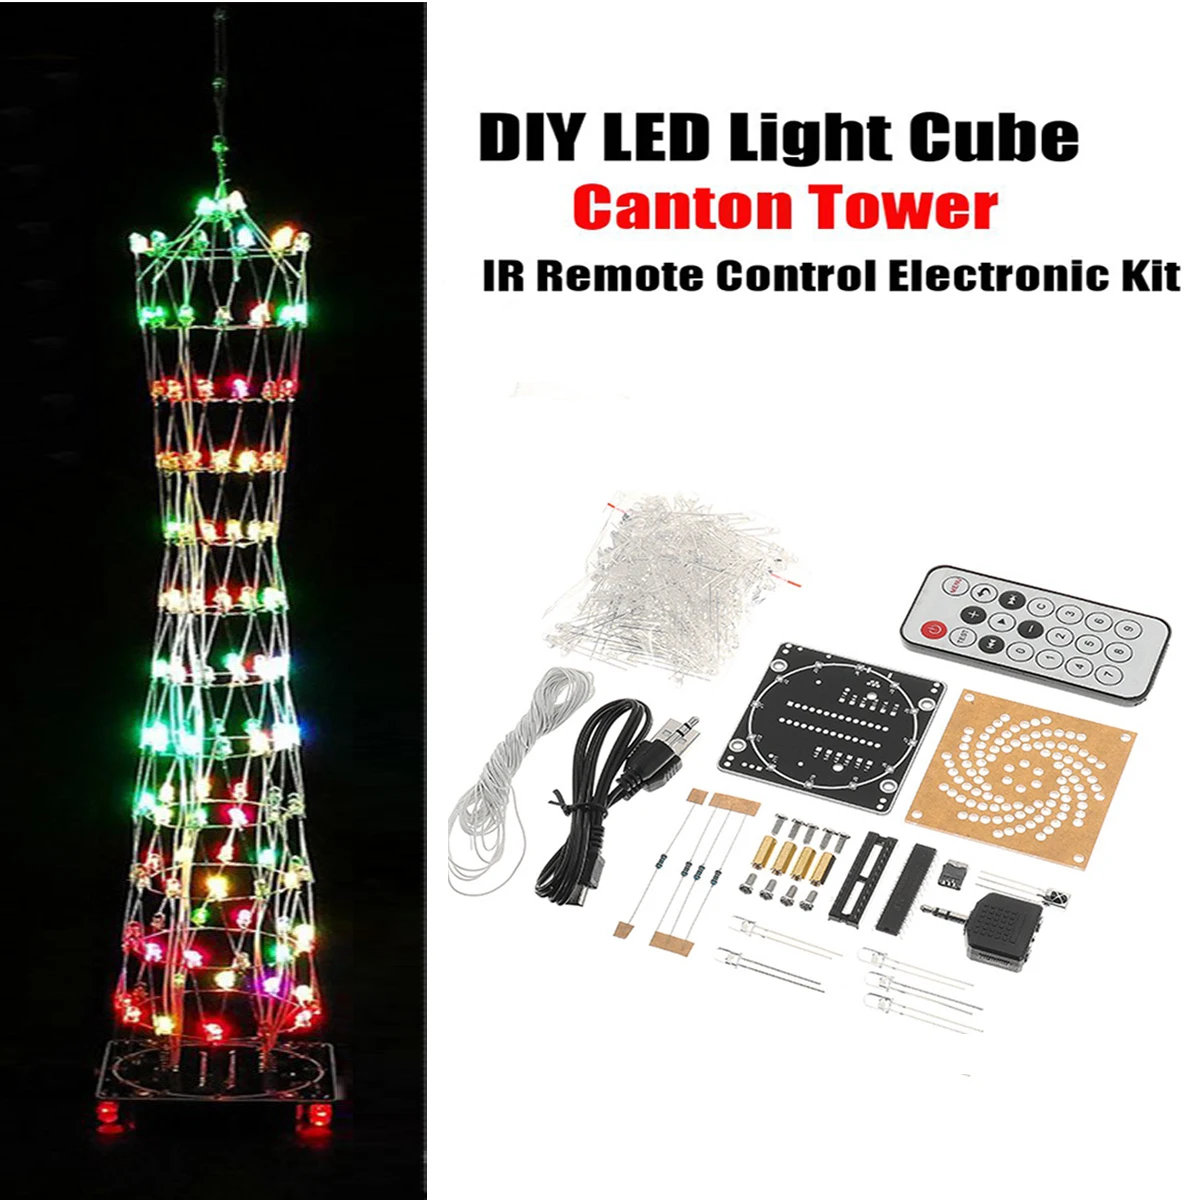 LEORYFull Цвет DIY светодиодный светильник Cube Canton Tower люкс беспроводной пульт дистанционного управления электронный комплект цветной светодиодный набор